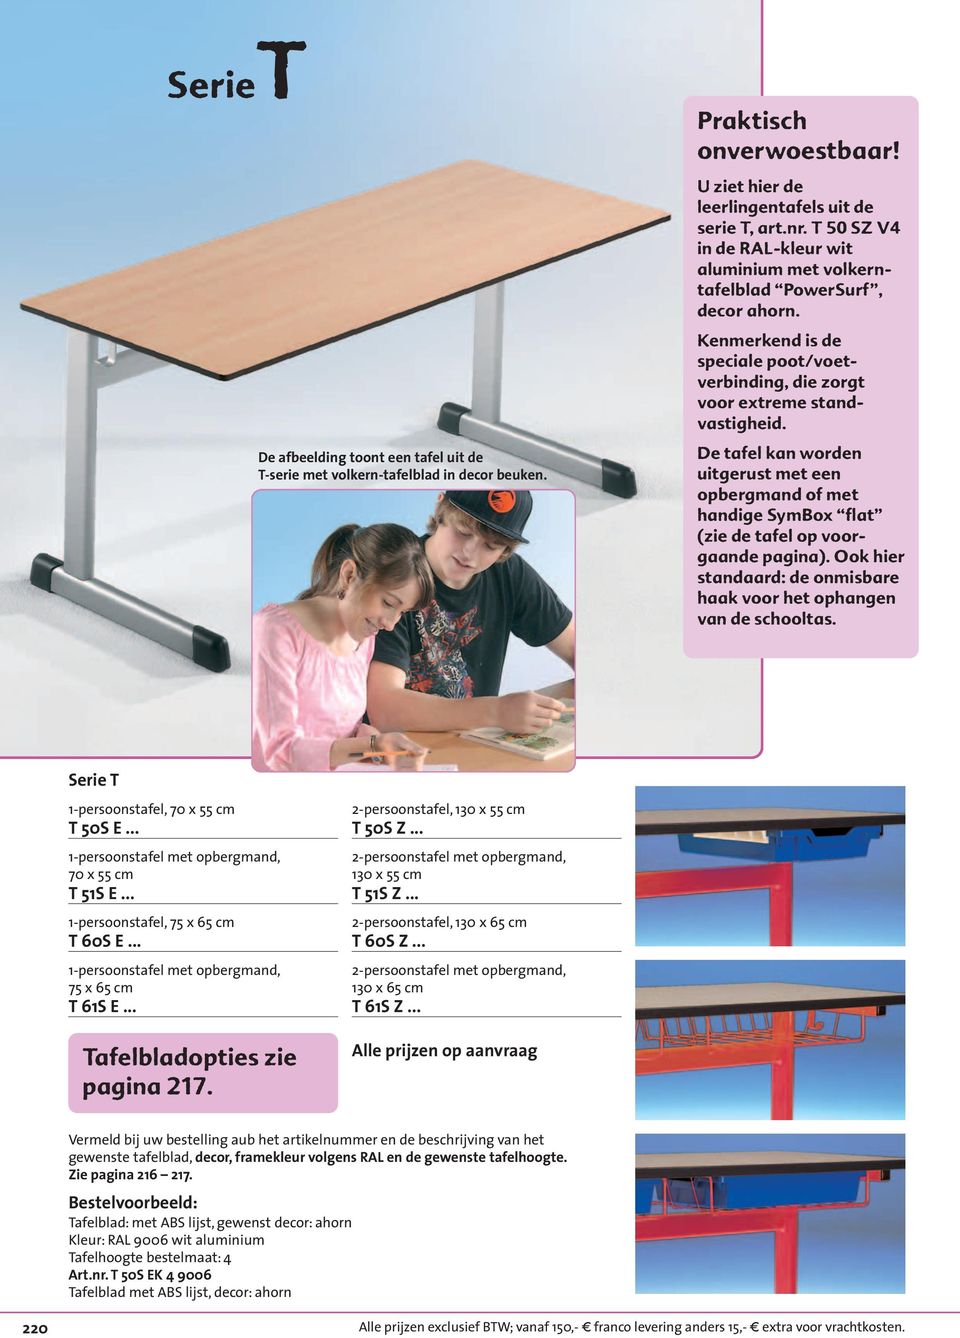 De tafel kan worden uitgerust met een opbergmand of met handige SymBox flat (zie de tafel op voorgaande pagina). Ook hier standaard: de onmisbare haak voor het ophangen van de schooltas.